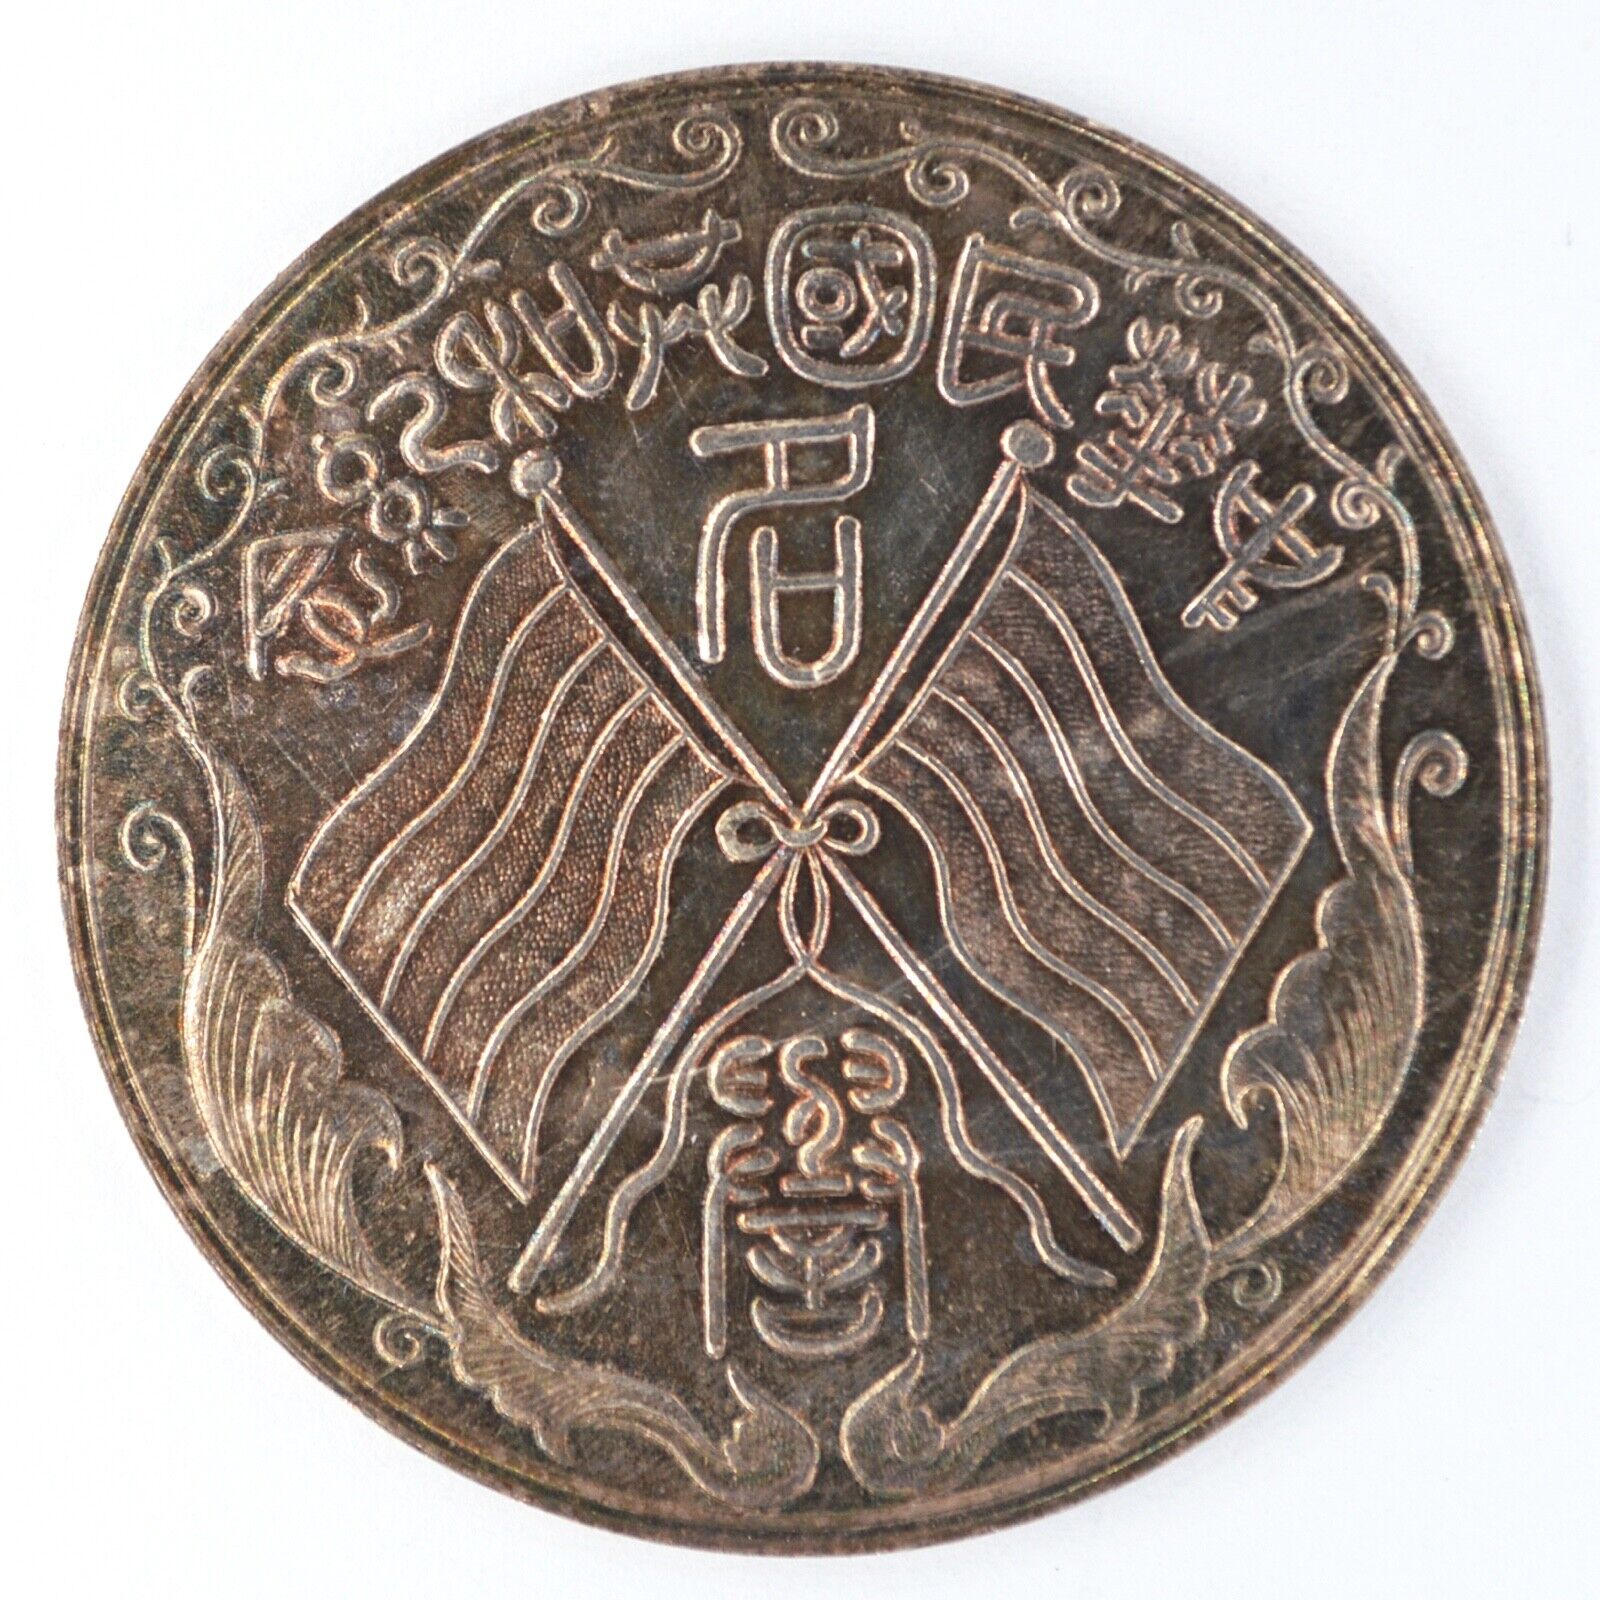 China, Republic, silver merit medal Commemorative of the Republic 1912-1913 rare